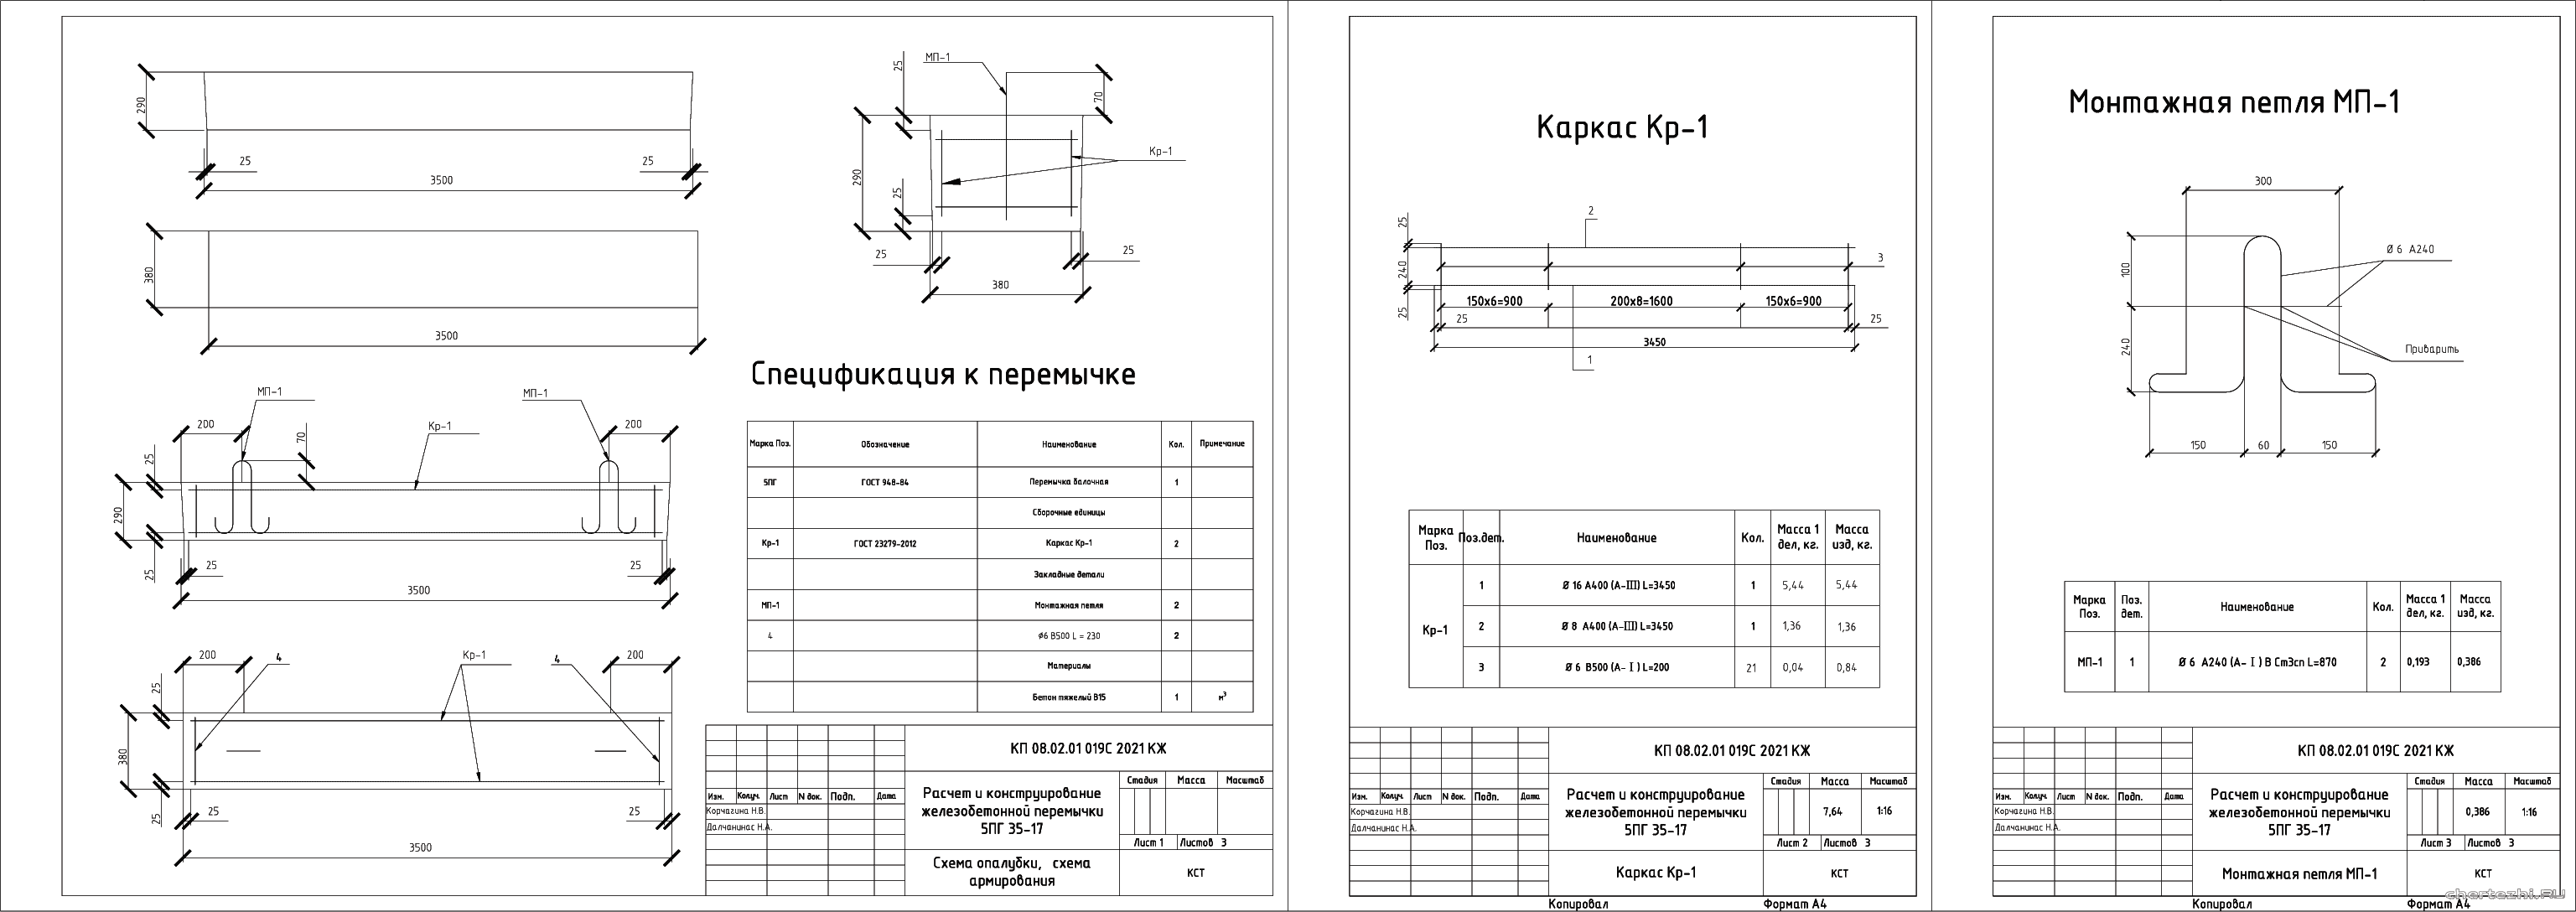 Курсовой проект (техникум) - Расчет и конструирование железобетонной перемычки 5ПГ 35-17